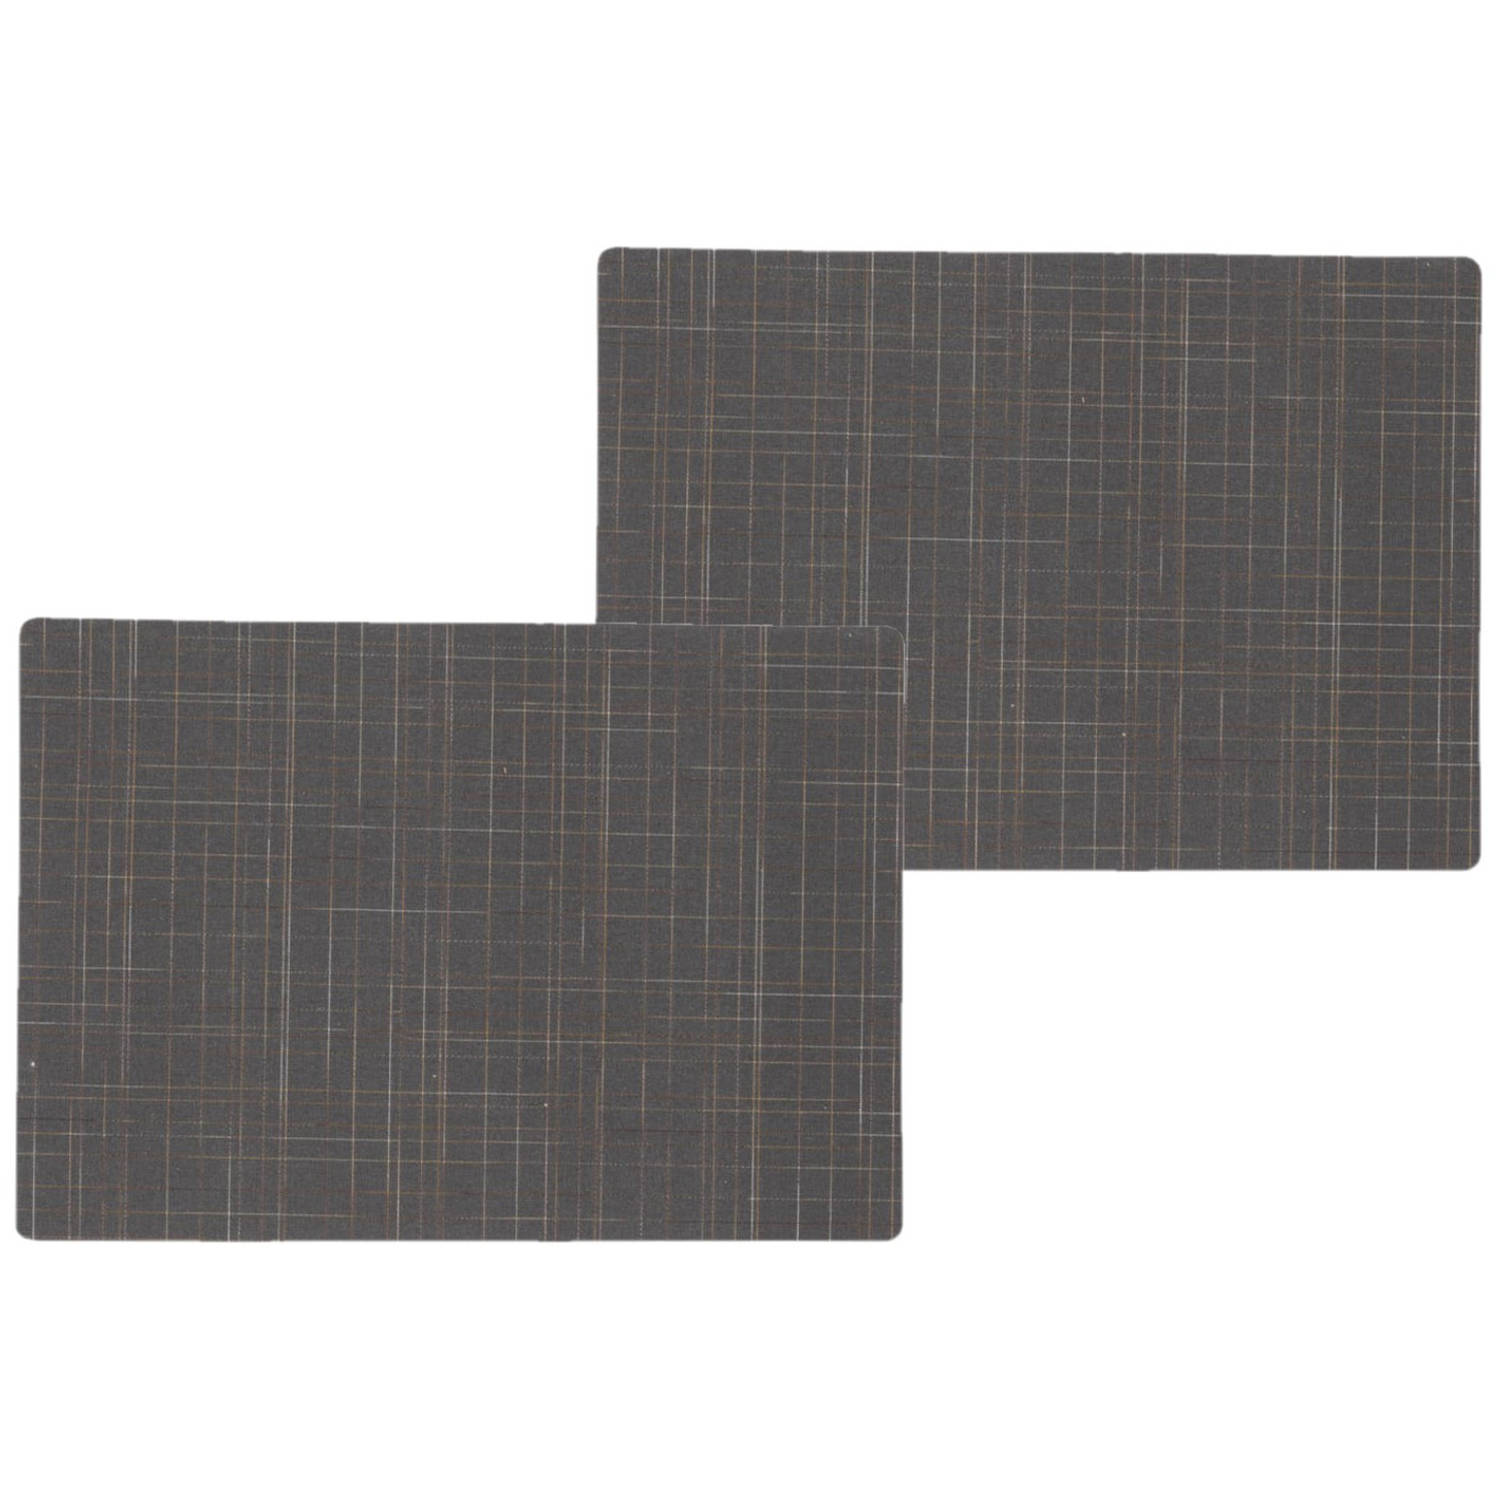 6x stuks stevige luxe Tafel placemats Liso grijs 30 x 43 cm - Placemats